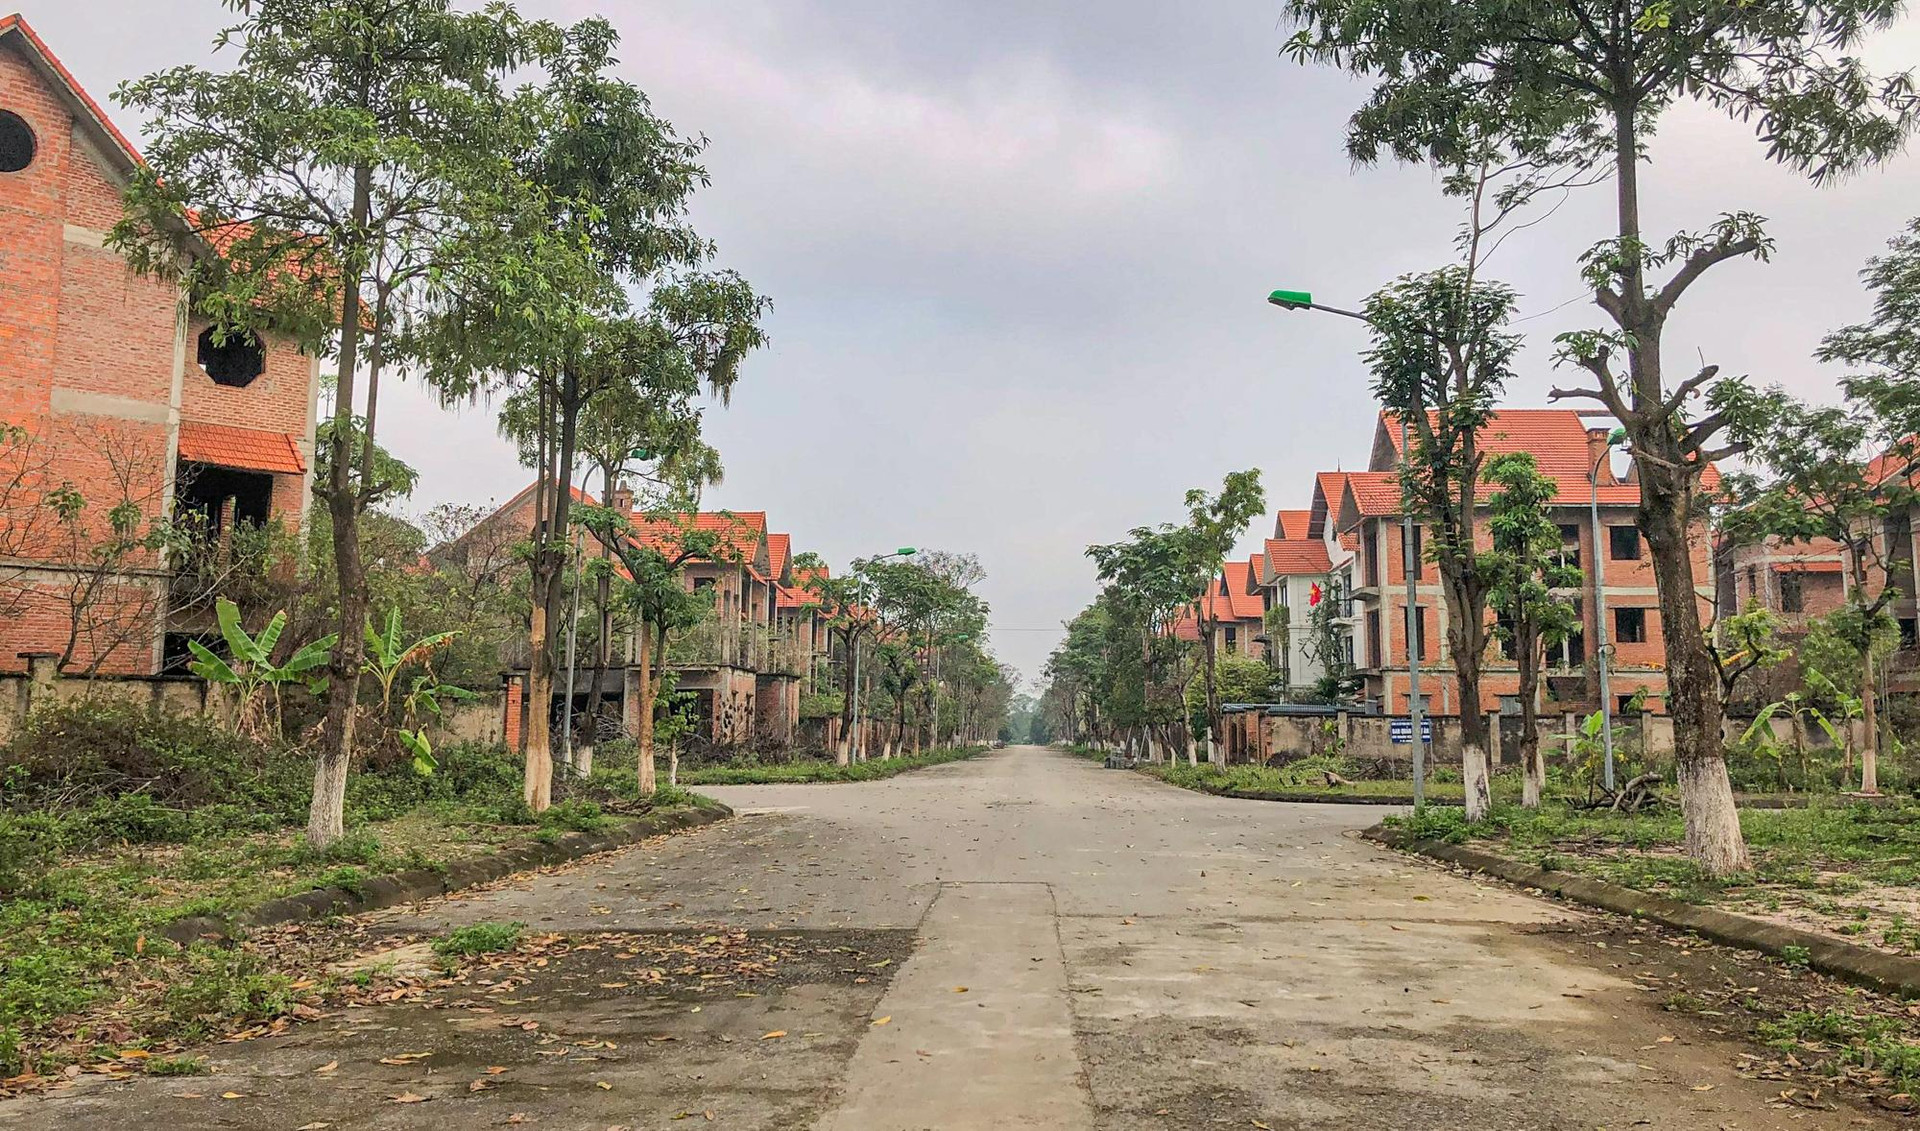 [Photo Essay] Sắp lên thành phố phía Bắc Hà Nội, &quot;làng biệt thự&quot; Mê Linh - nơi chôn vùi hàng nghìn tỷ đồng của nhà đầu tư hiện nay ra sao? - Ảnh 2.